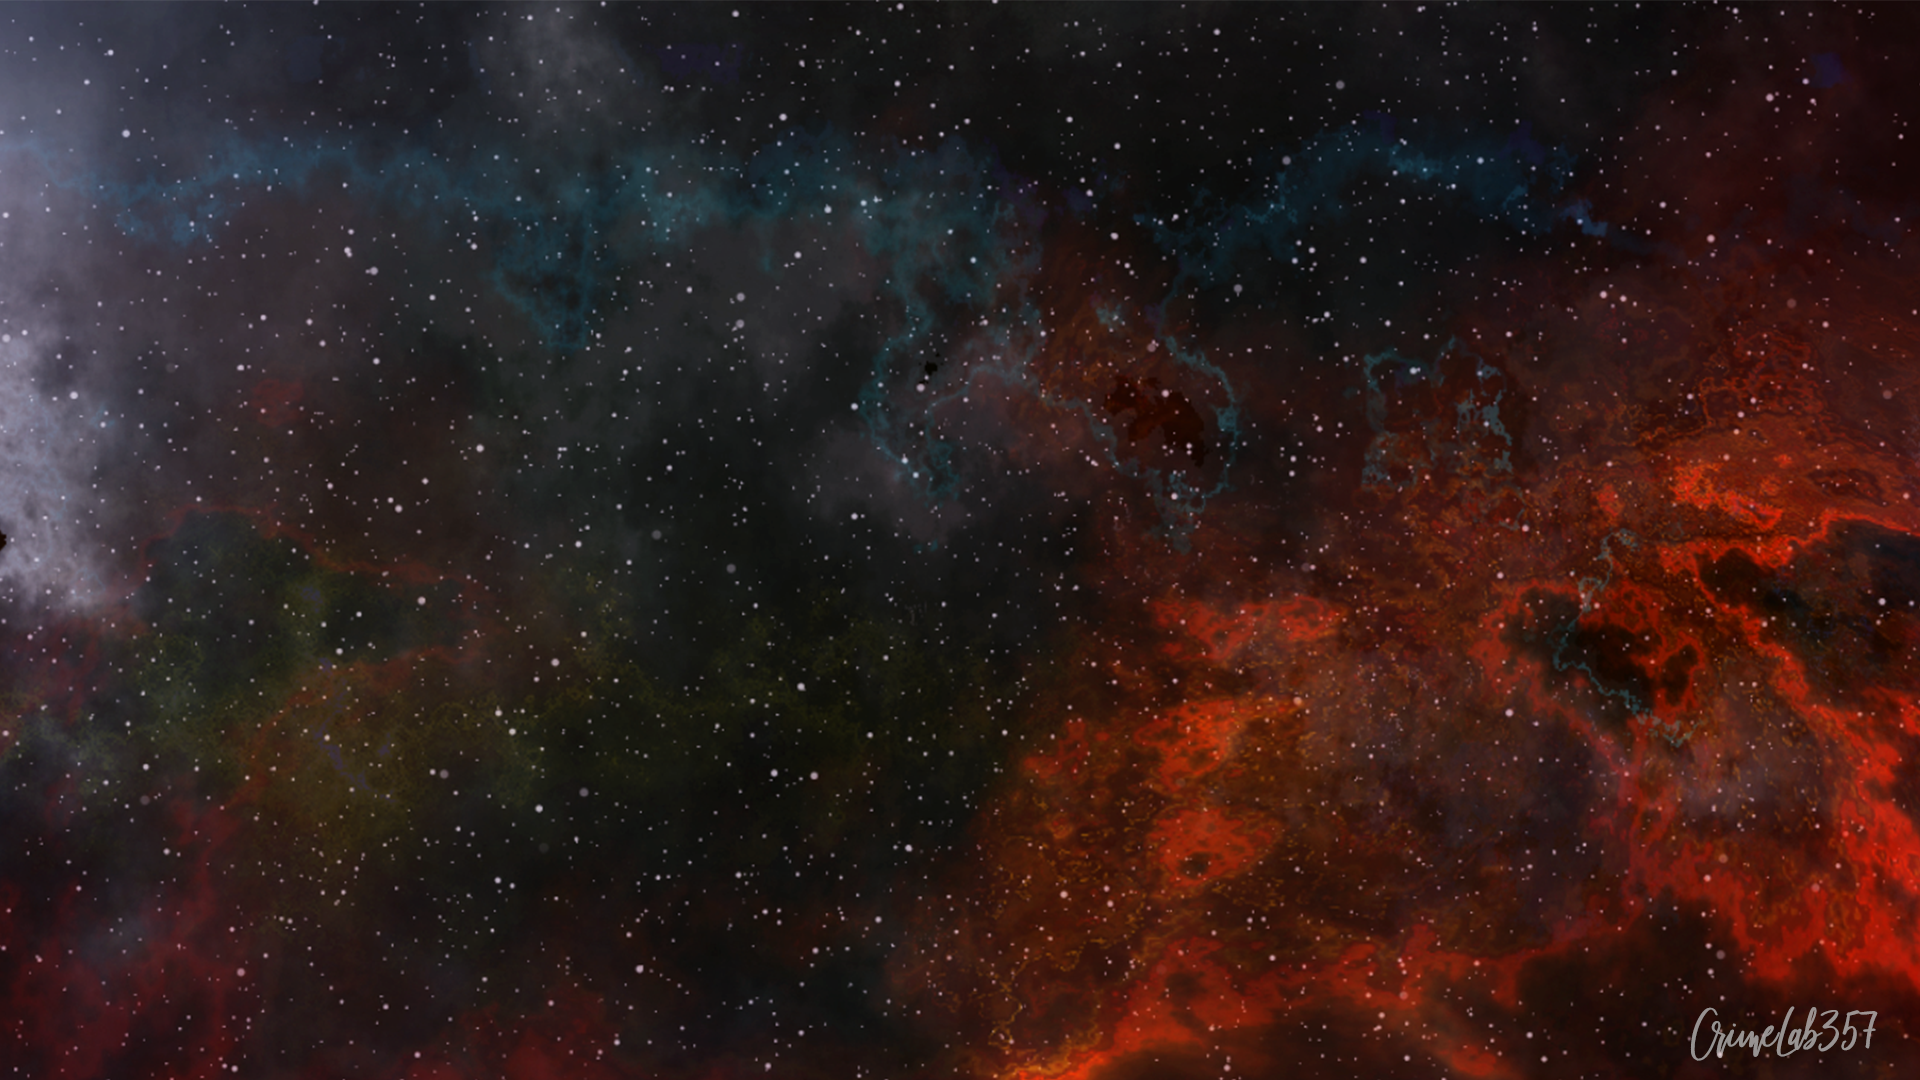 Fantasy Art Digital Art Deep Space Galaxy Nebula Crimelab357 Liam Ragnathsingh 1920x1080